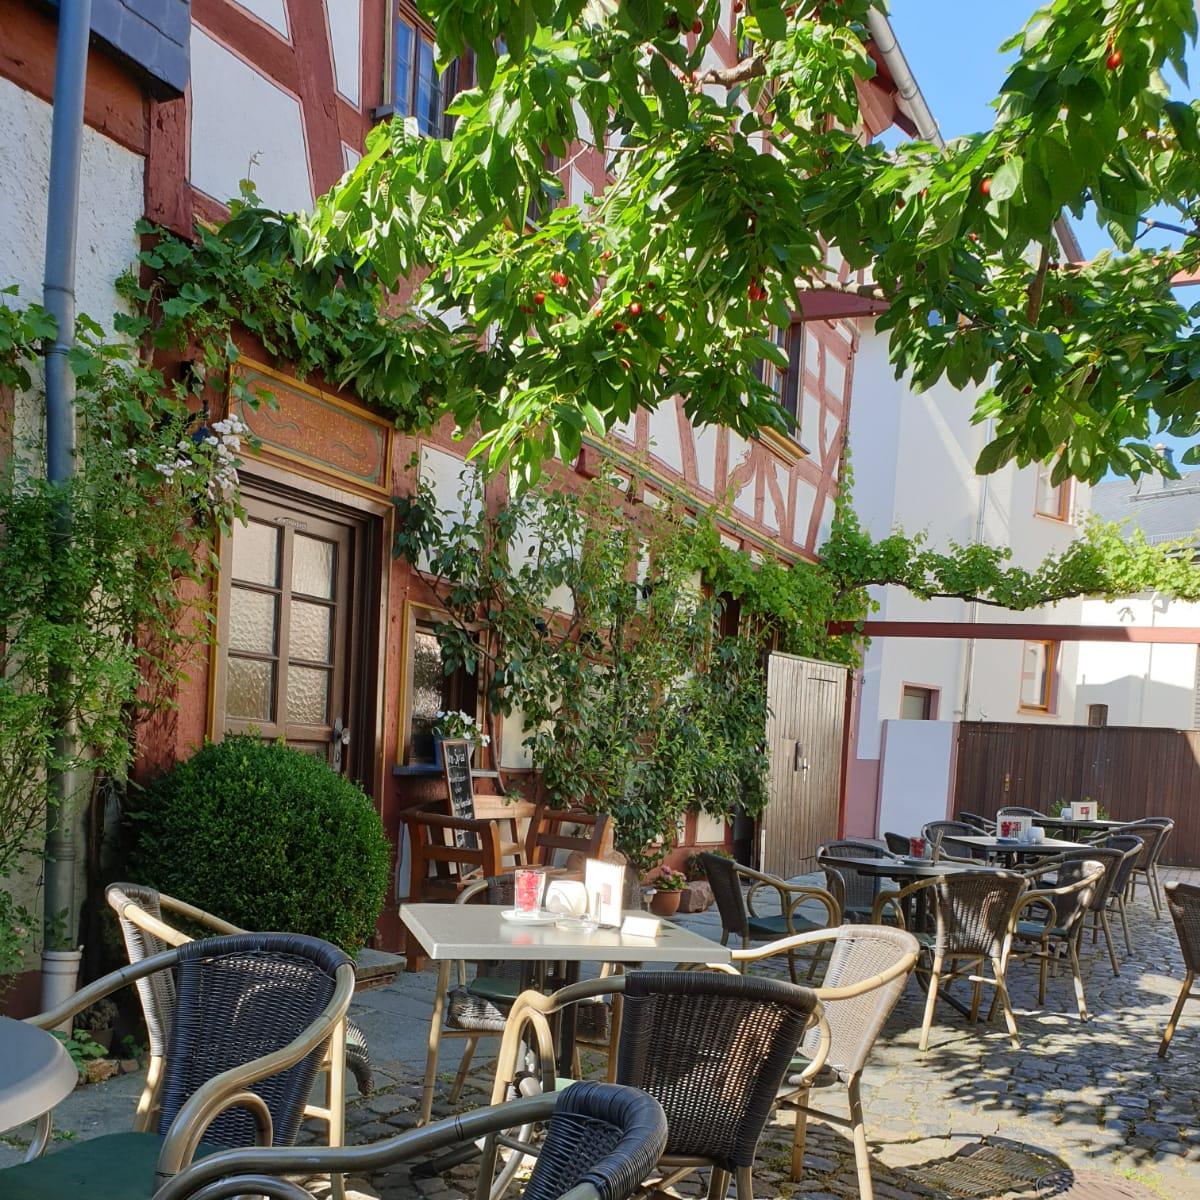 Restaurant "WeinCafé am Kirchplatz" in Bad Camberg